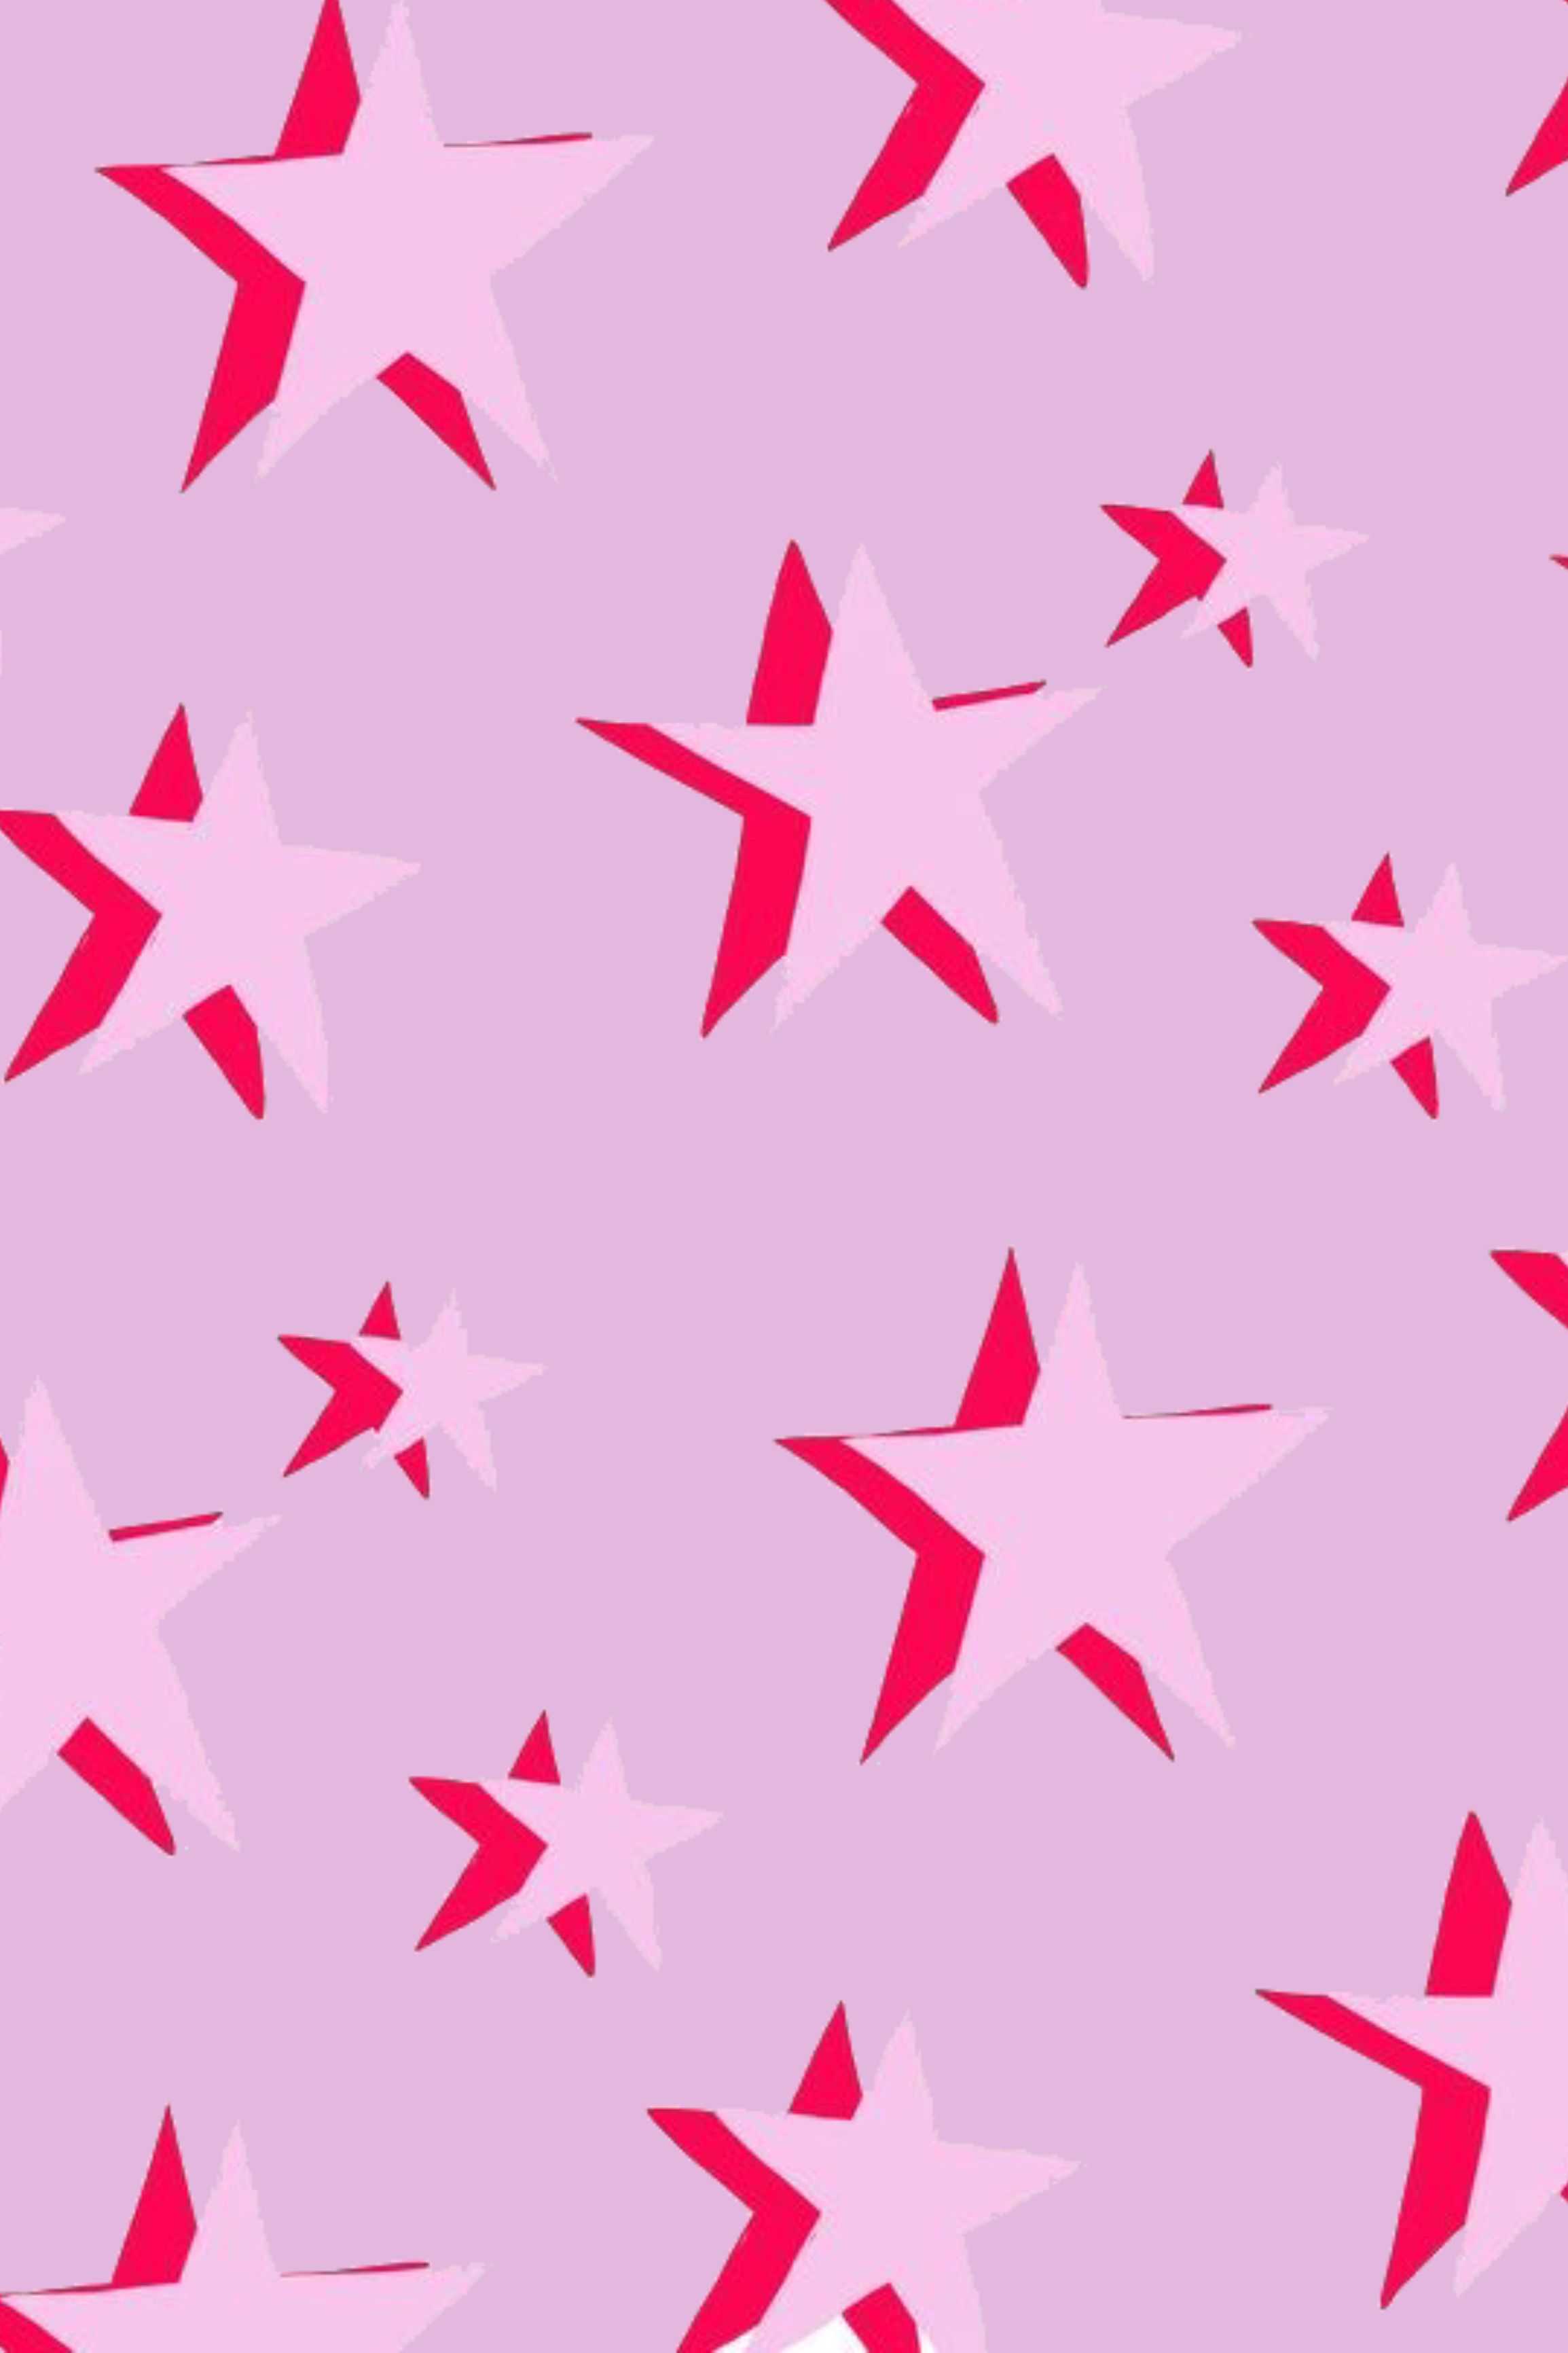 Aesthetic Pink Wallpaper: Với gam màu hồng nhẹ nhàng và thiết kế tinh tế, hình nền Aesthetic Pink khiến mắt bạn thích thú và tâm hồn bạn tràn đầy sự yêu đời. Hình ảnh này sẽ làm tăng tính trang trí cho chiếc điện thoại hay máy tính của bạn, đồng thời khiến bạn cảm thấy thật phấn khích mỗi khi dùng sản phẩm của mình.